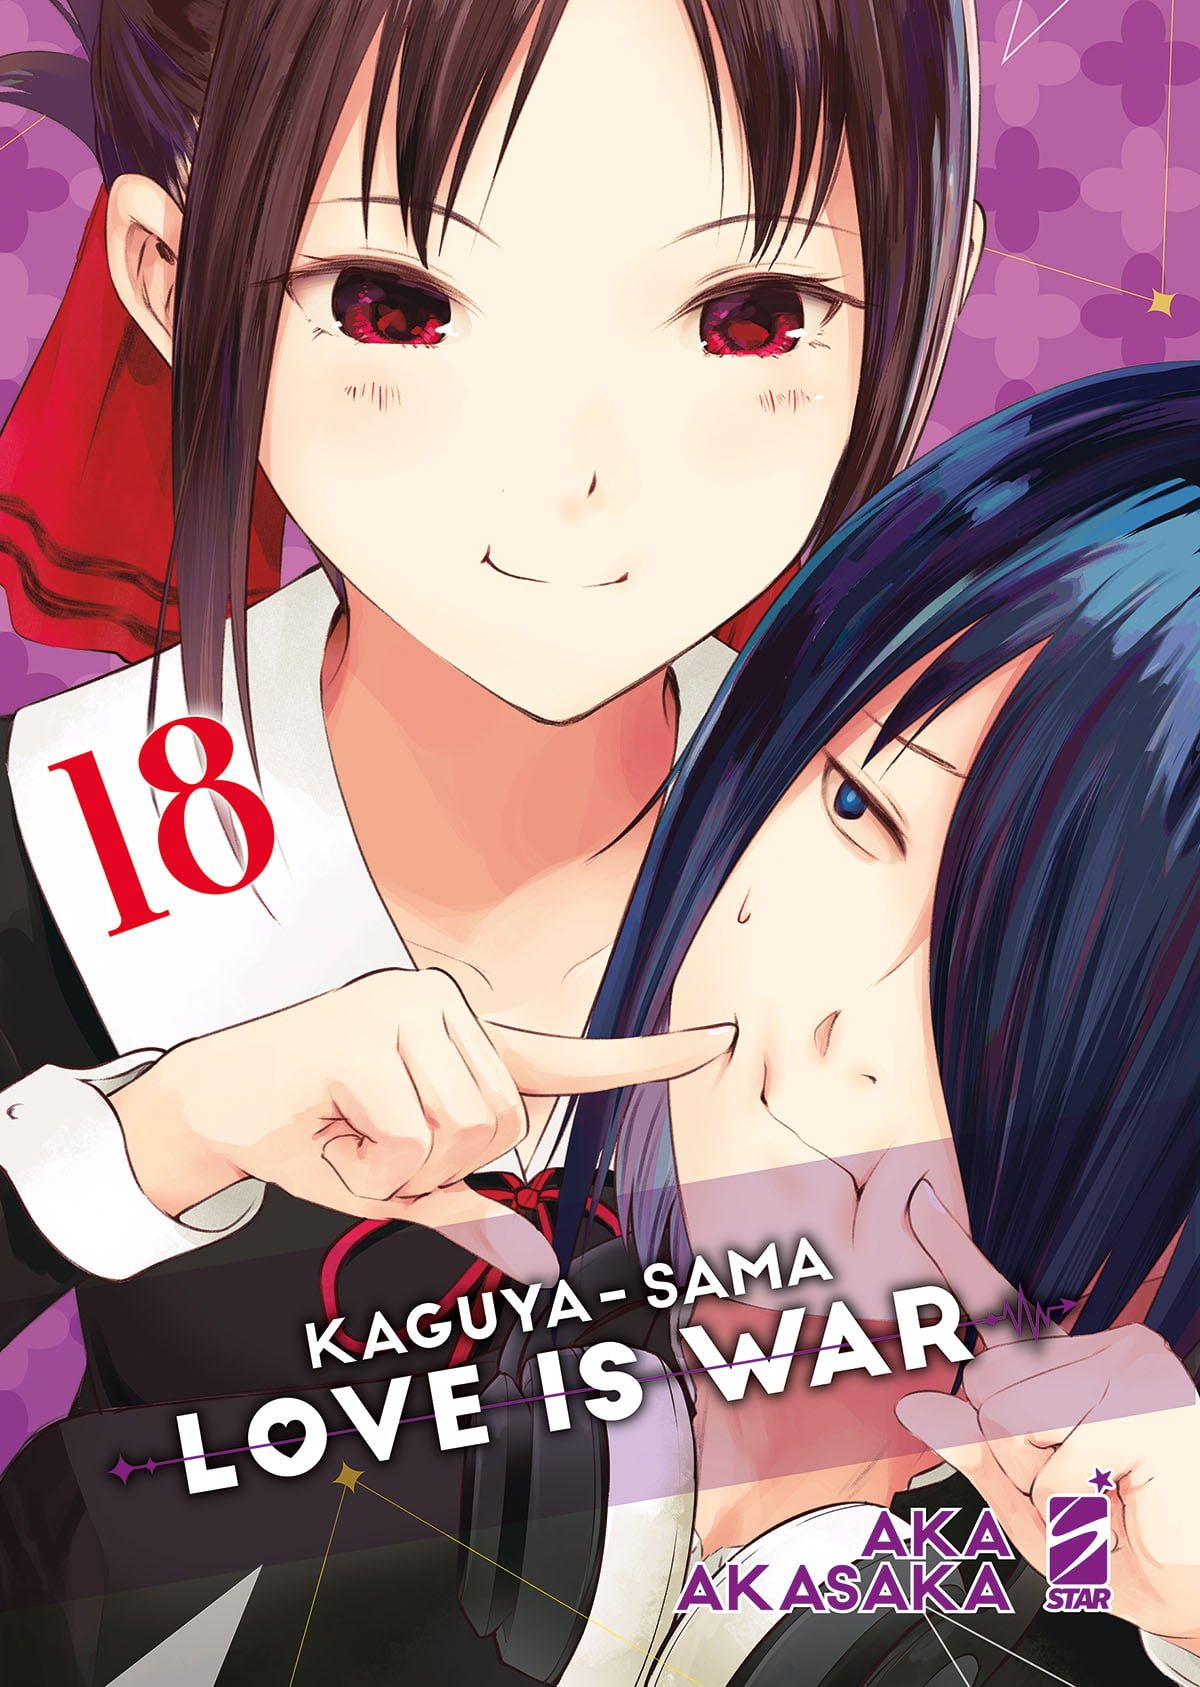 KAGUYA SAMA - LOVE IS WAR 18 FAN 282